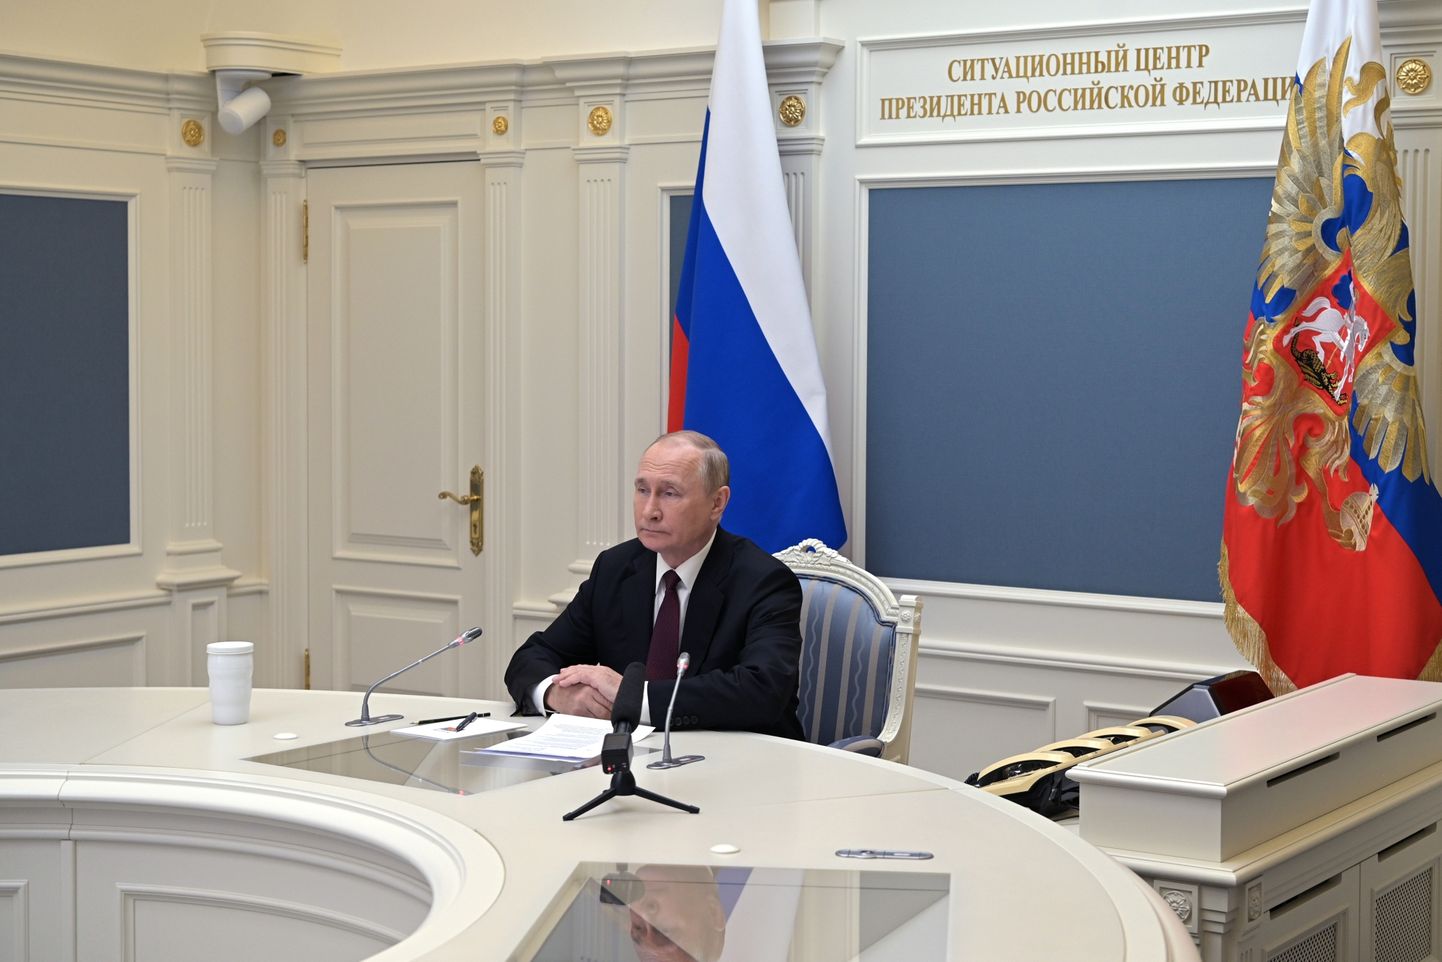 Vladimir Putin Venemaa presidendi situatsioonikeskuses strateegilisi tuumaõppusi jälgimas. Pilt on tehtud 26. oktoobril 2022.